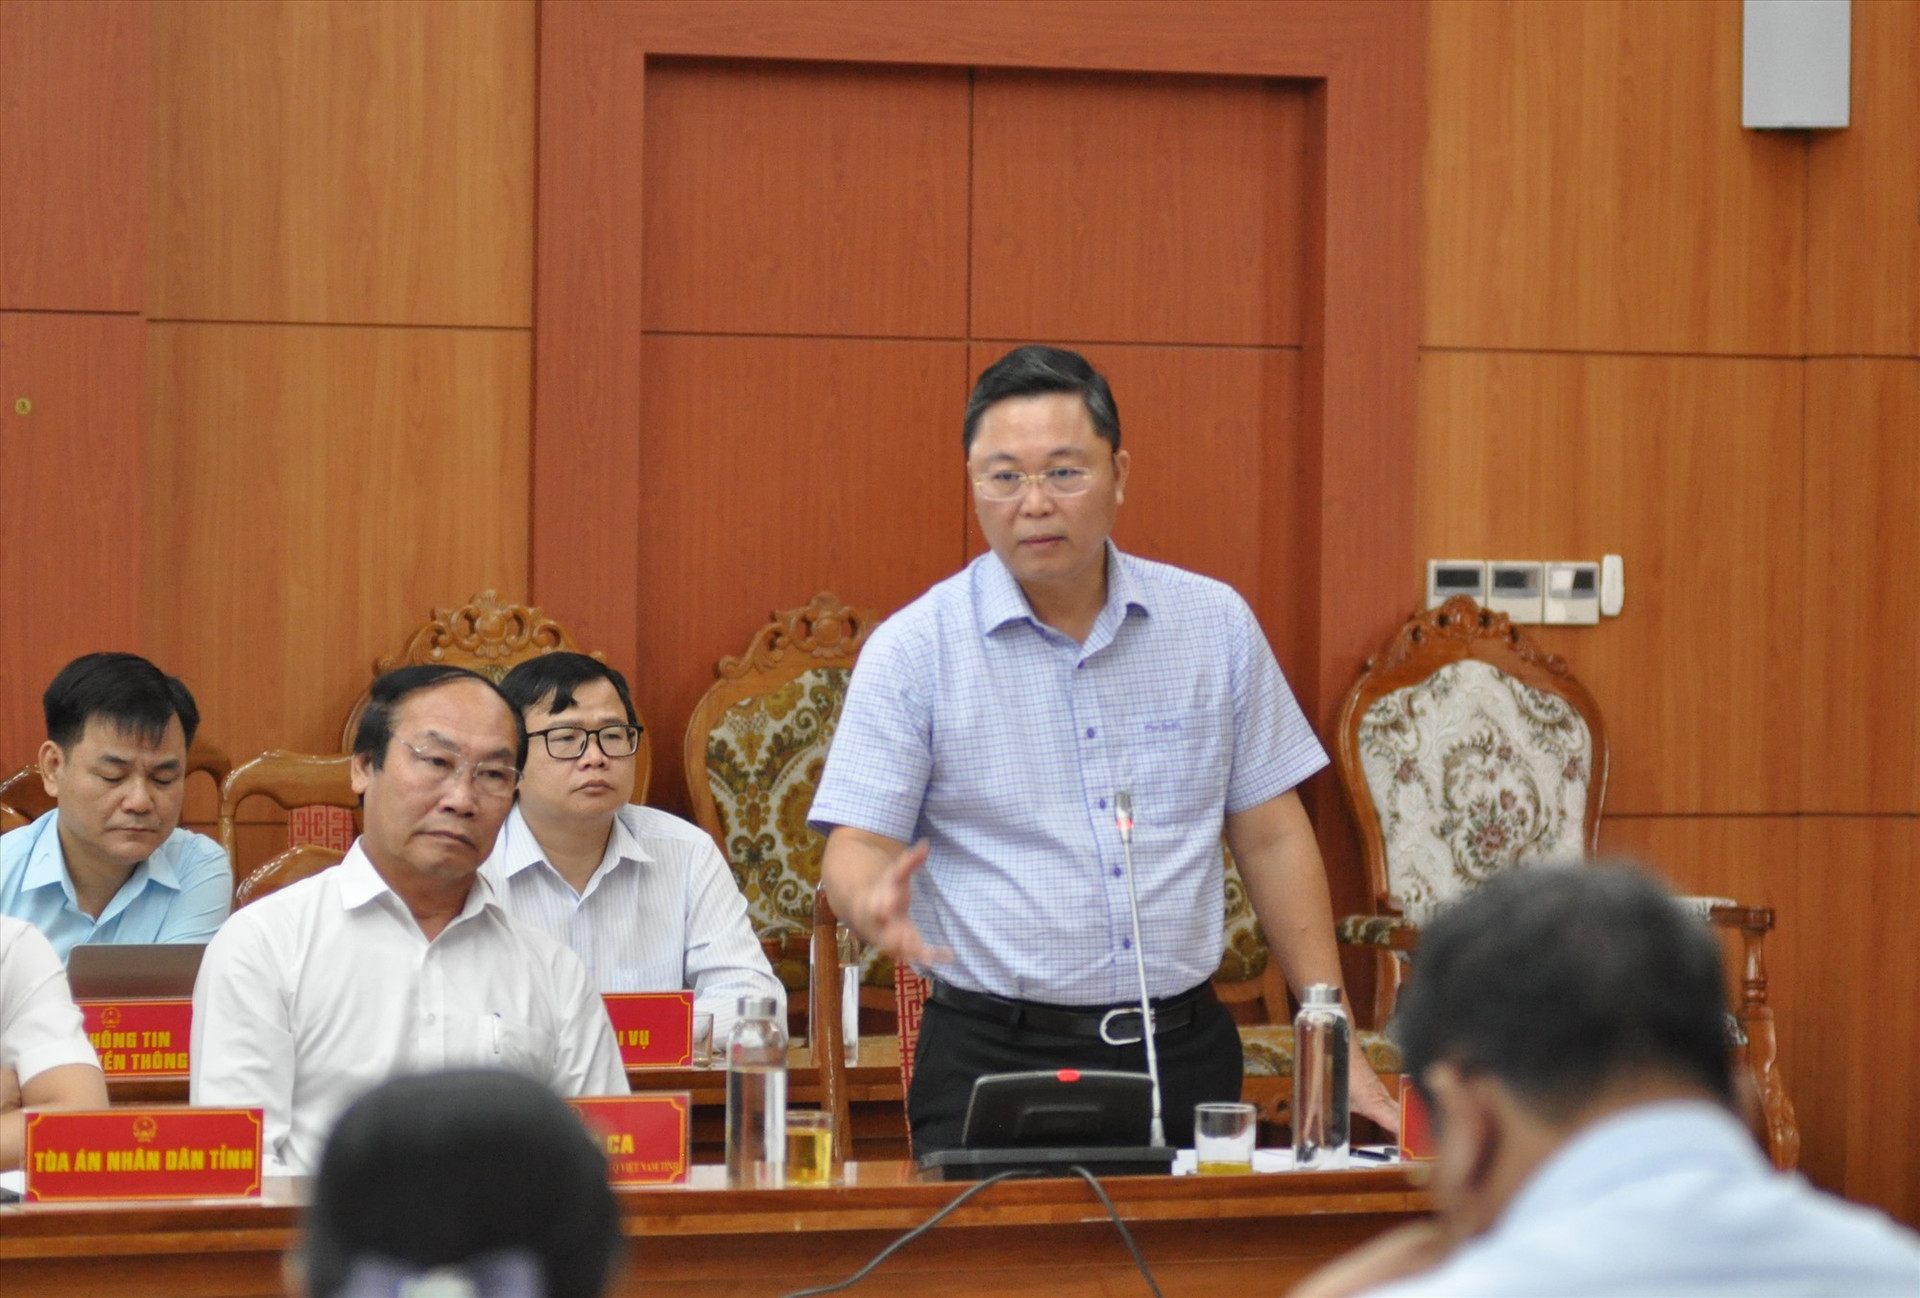 Chủ tịch UBND tỉnh Lê Trí Thanh chỉ đạo các sở, ngành chức năng hoàn thiện các đề án, đảm bảo quy định. Ảnh: X.P